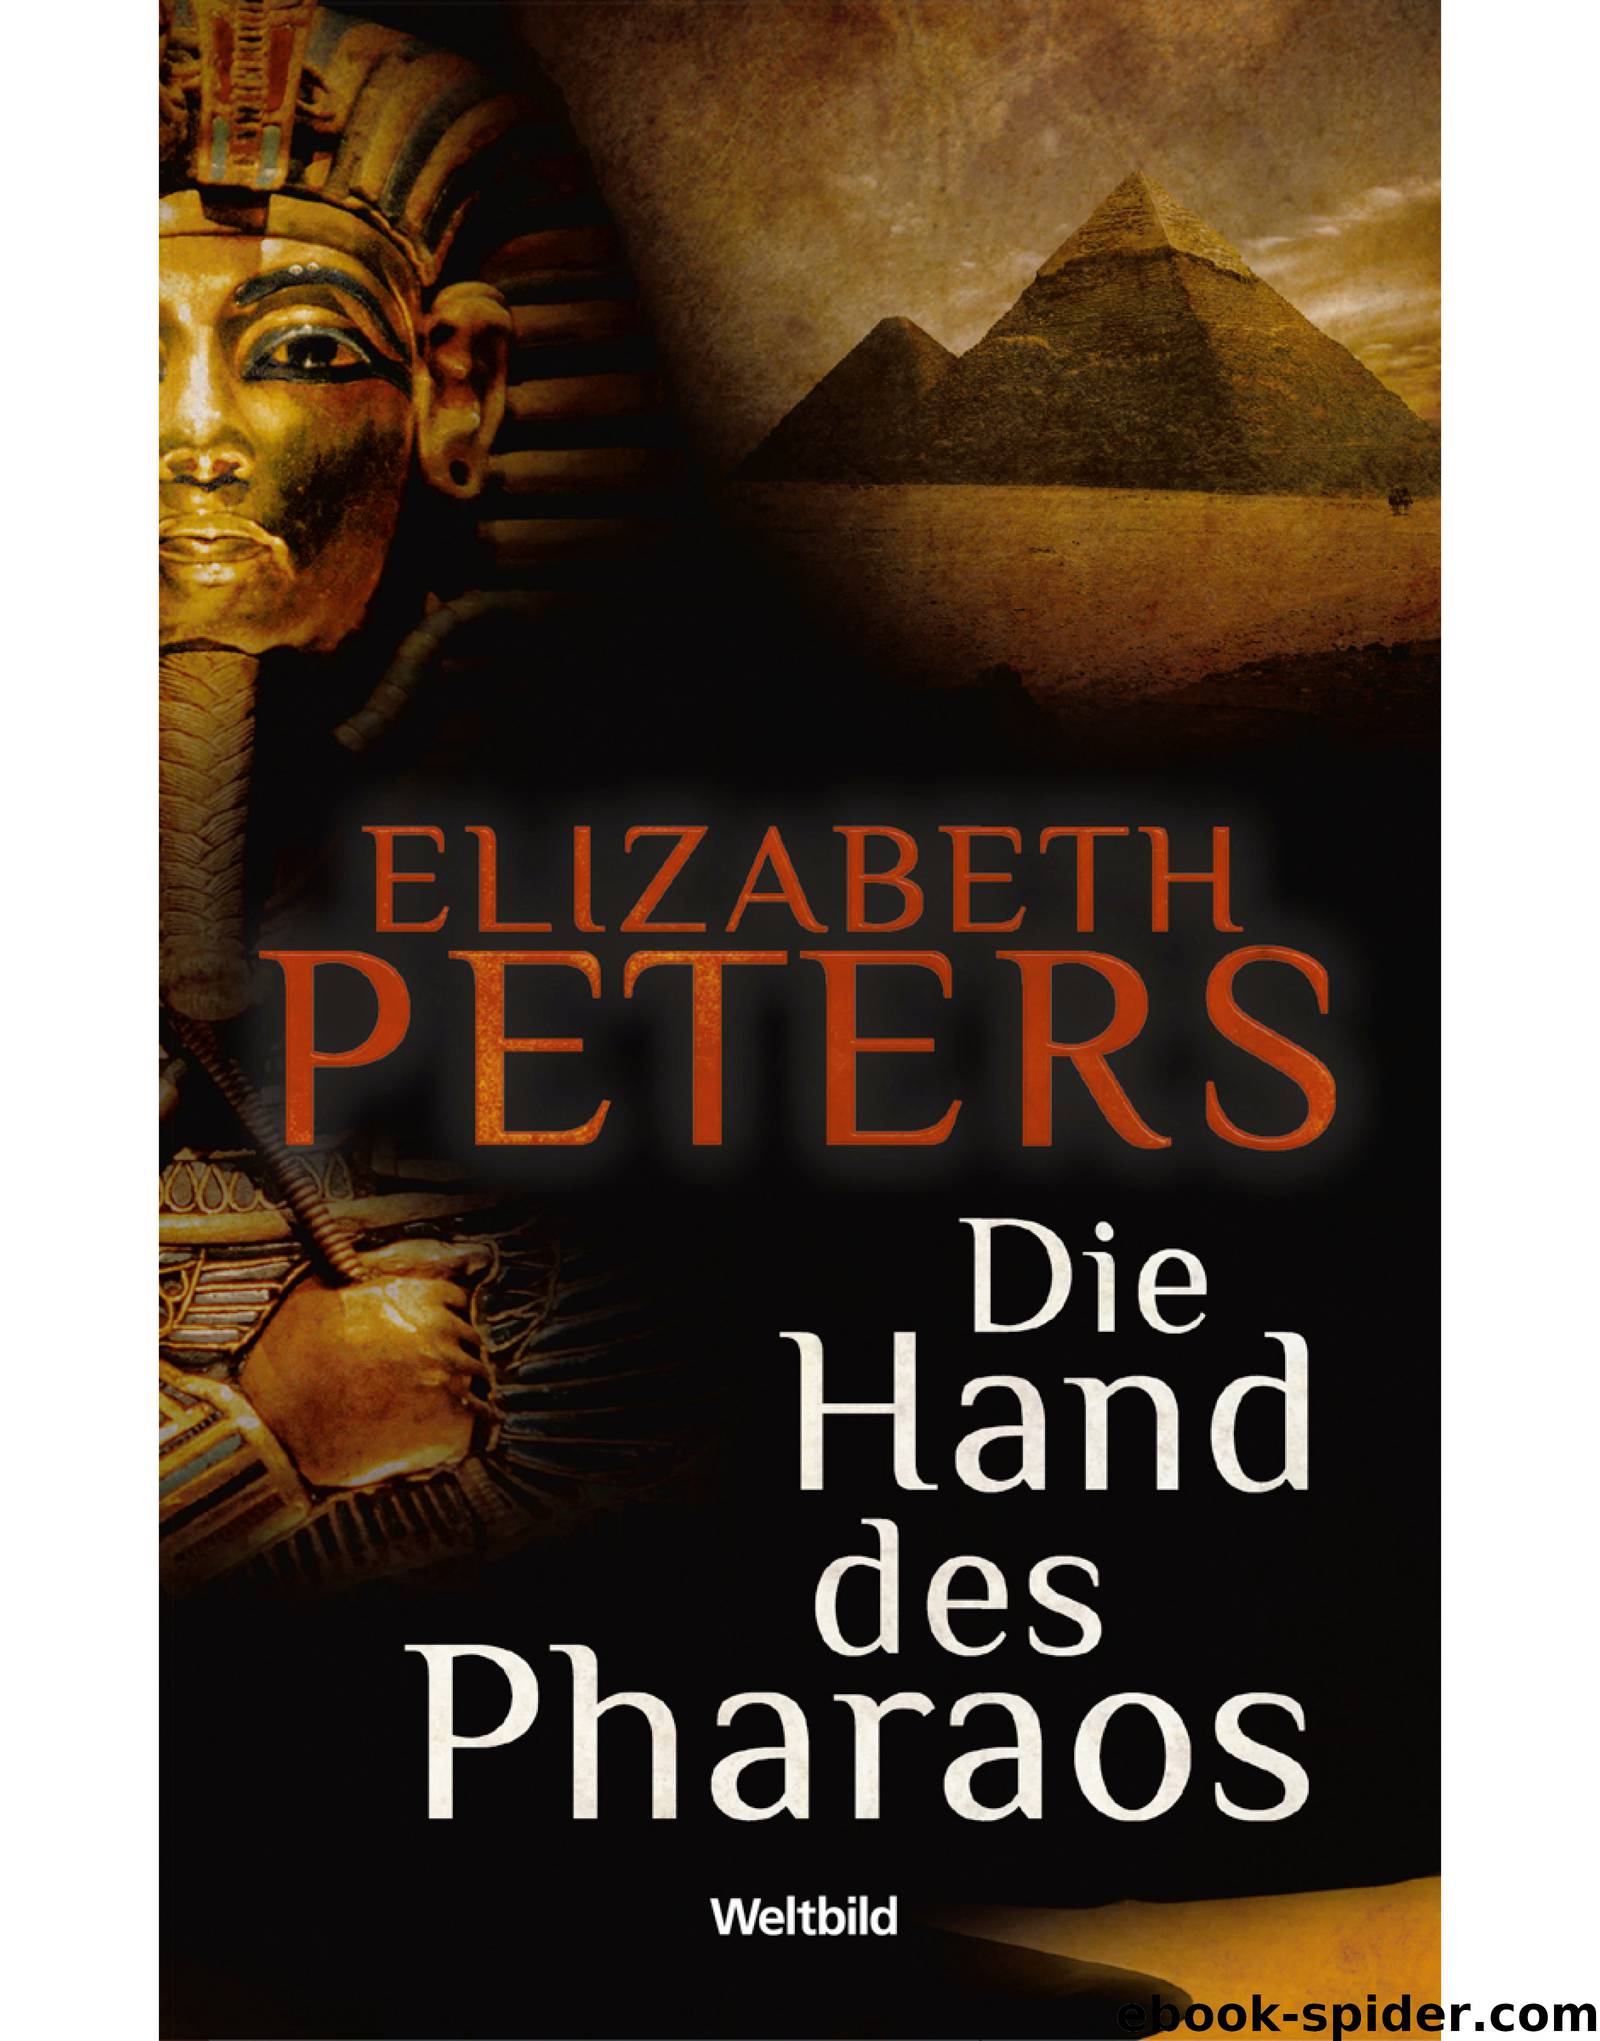 Die Hand des Pharaos by Elizabeth Peters